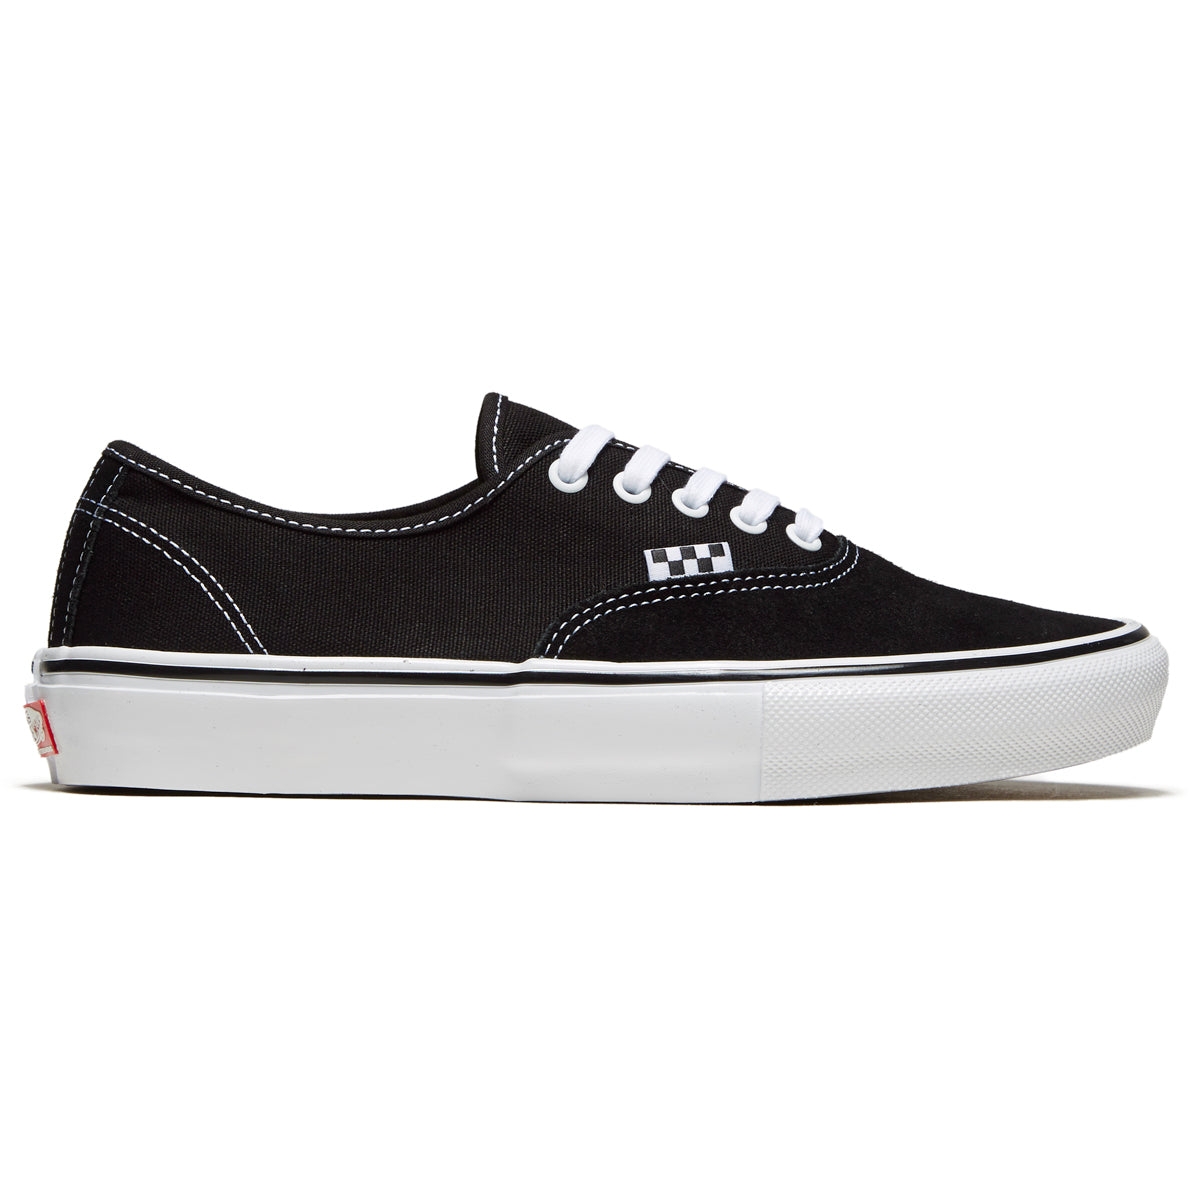 Vans Skate Authentic Shoes - Black/White image 1